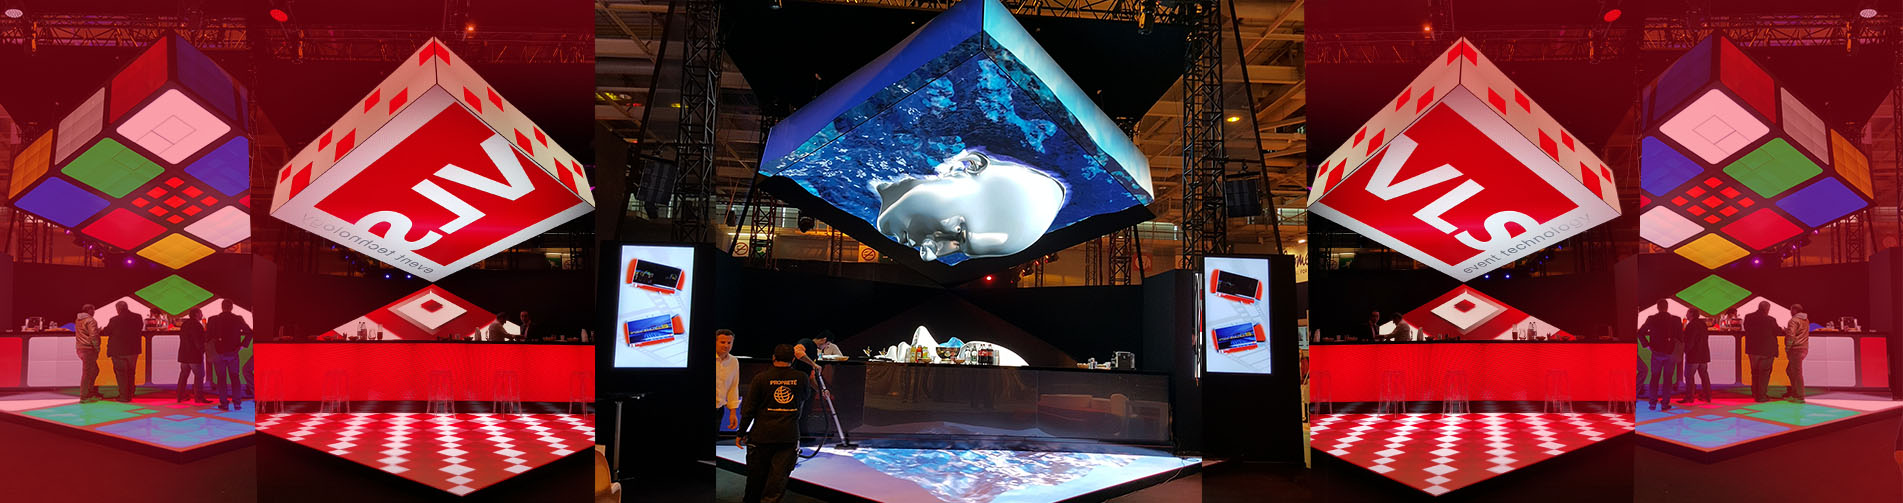 cube 3D LED VLS HEAVENT PARIS 2015